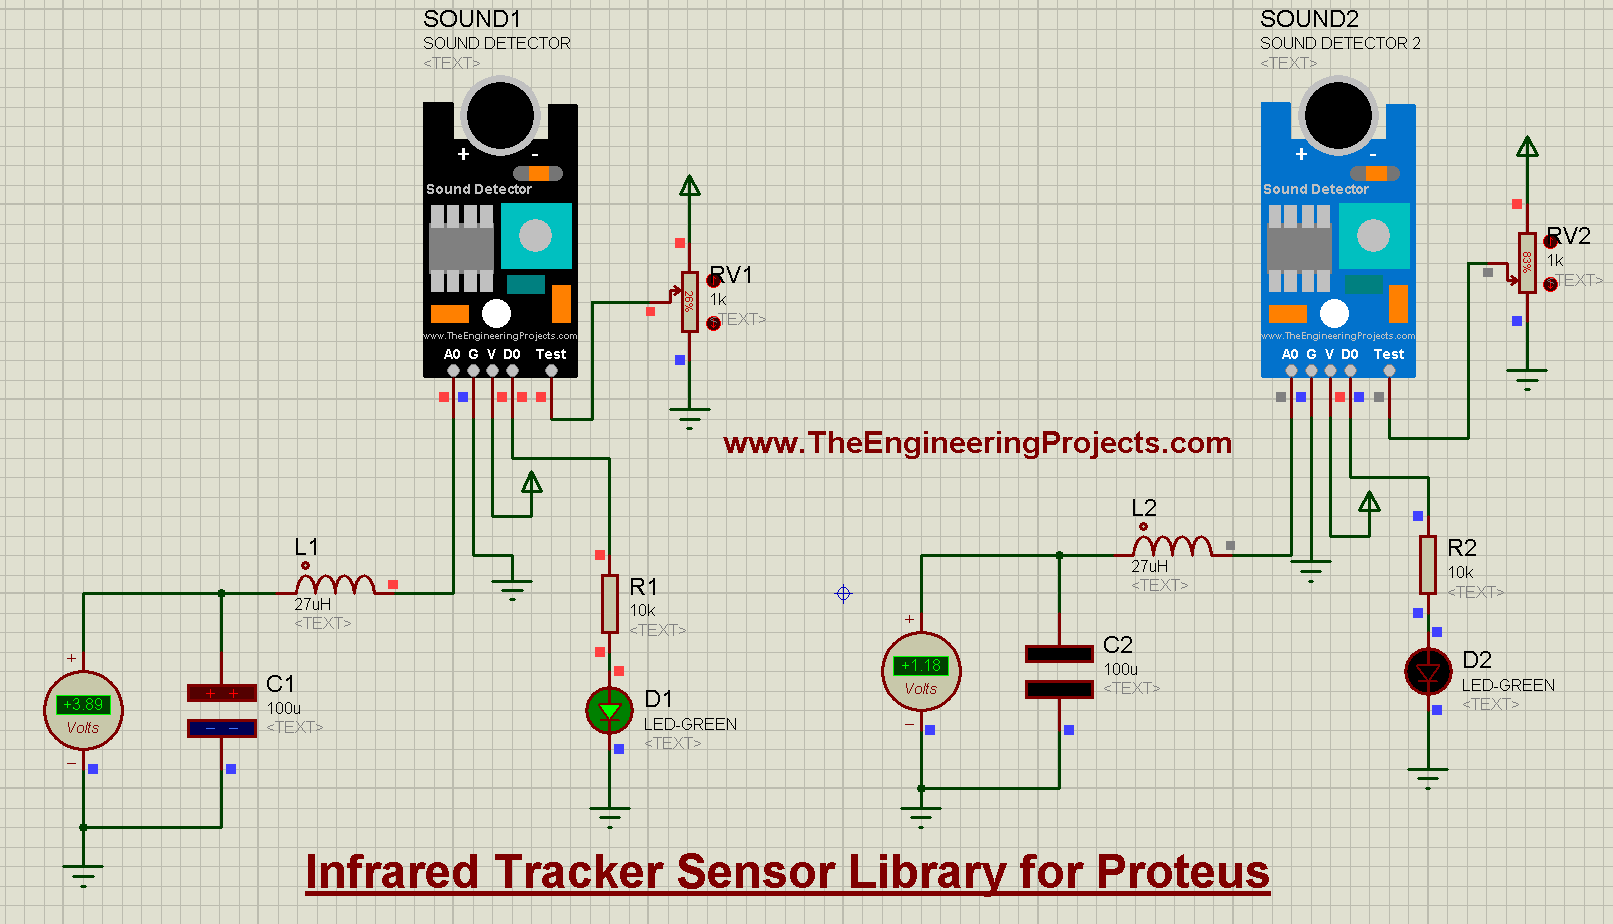 Sound Detector Library for Proteus V2.0, Sound Detector Library for Proteus, Sound Detector in Proteus, Sound Detector Proteus, Sound Detector Proteus simulation